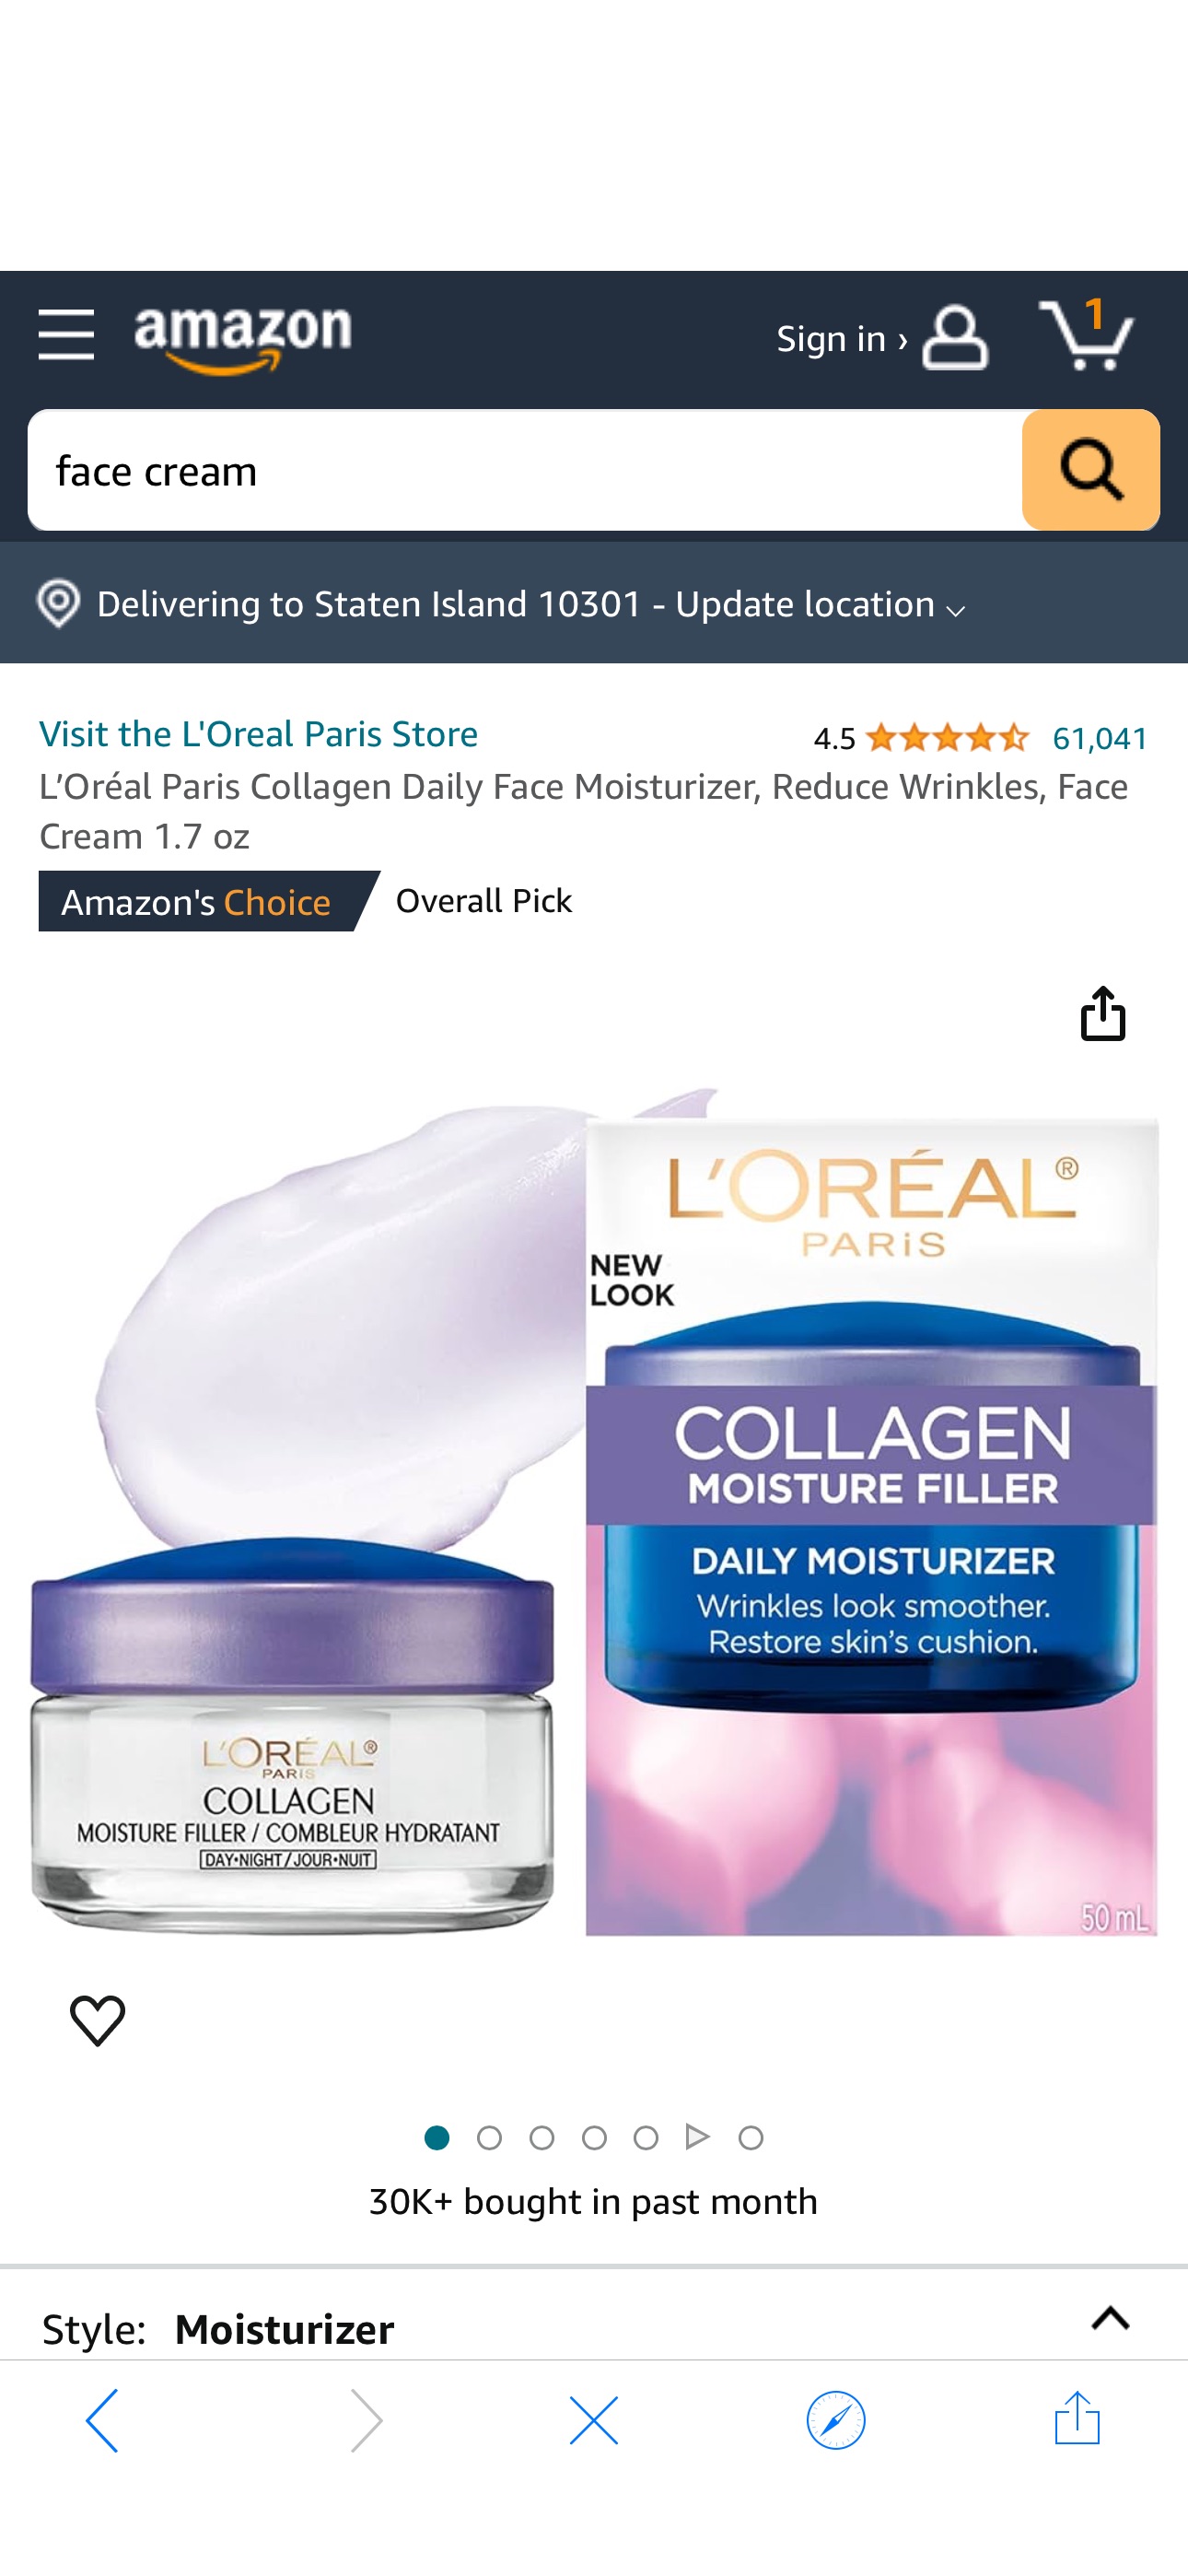 Amazon.com: L’Oréal Paris Collagen Daily Face Moisturizer, Reduce Wrinkles, Face Cream 1.7 oz : Beauty & Personal Care